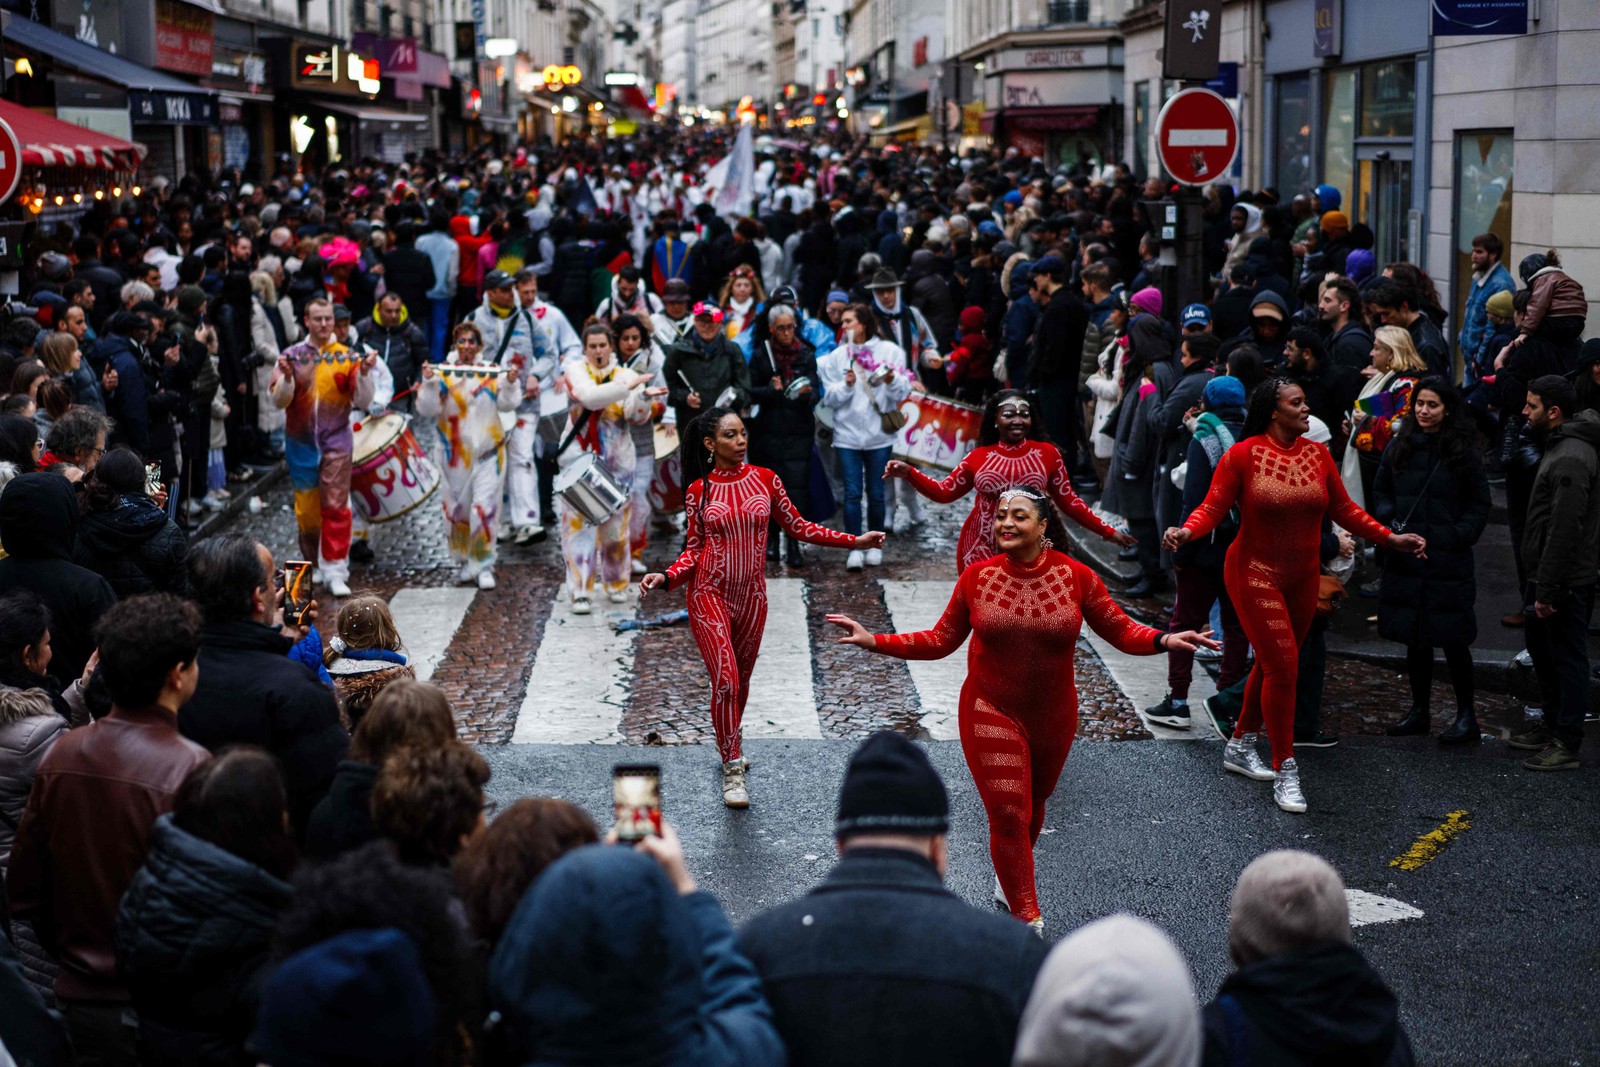 Paris também tem carnaval, chamado de Saint-Fargeau, com grupos de foliões tomando as ruas no domingo antes do Mardi Gras (a Terça Gorda) — Foto: Dimitar Dilkoff / AFP